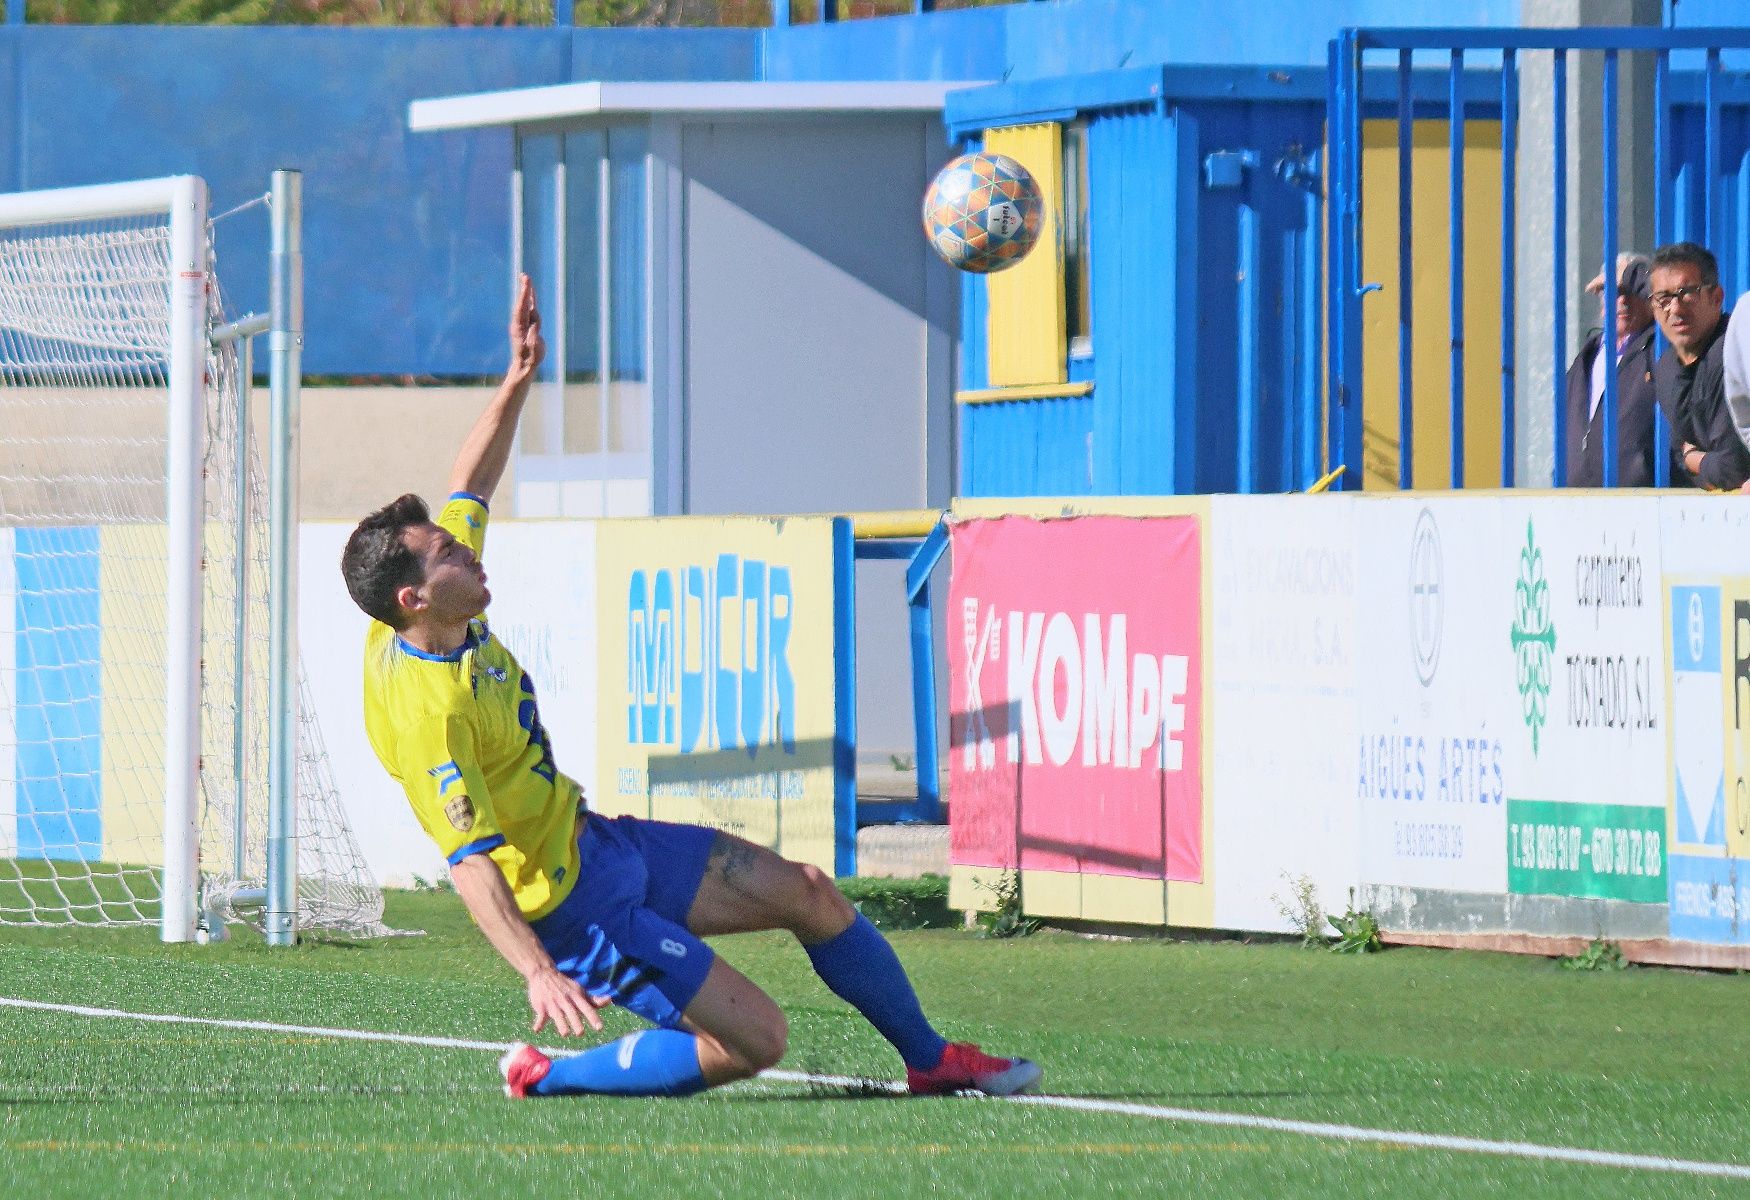 L'efectivitat permet a la UD San Mauro superar el FC Pirinaica i recuperar la cinquena posició (2-0)